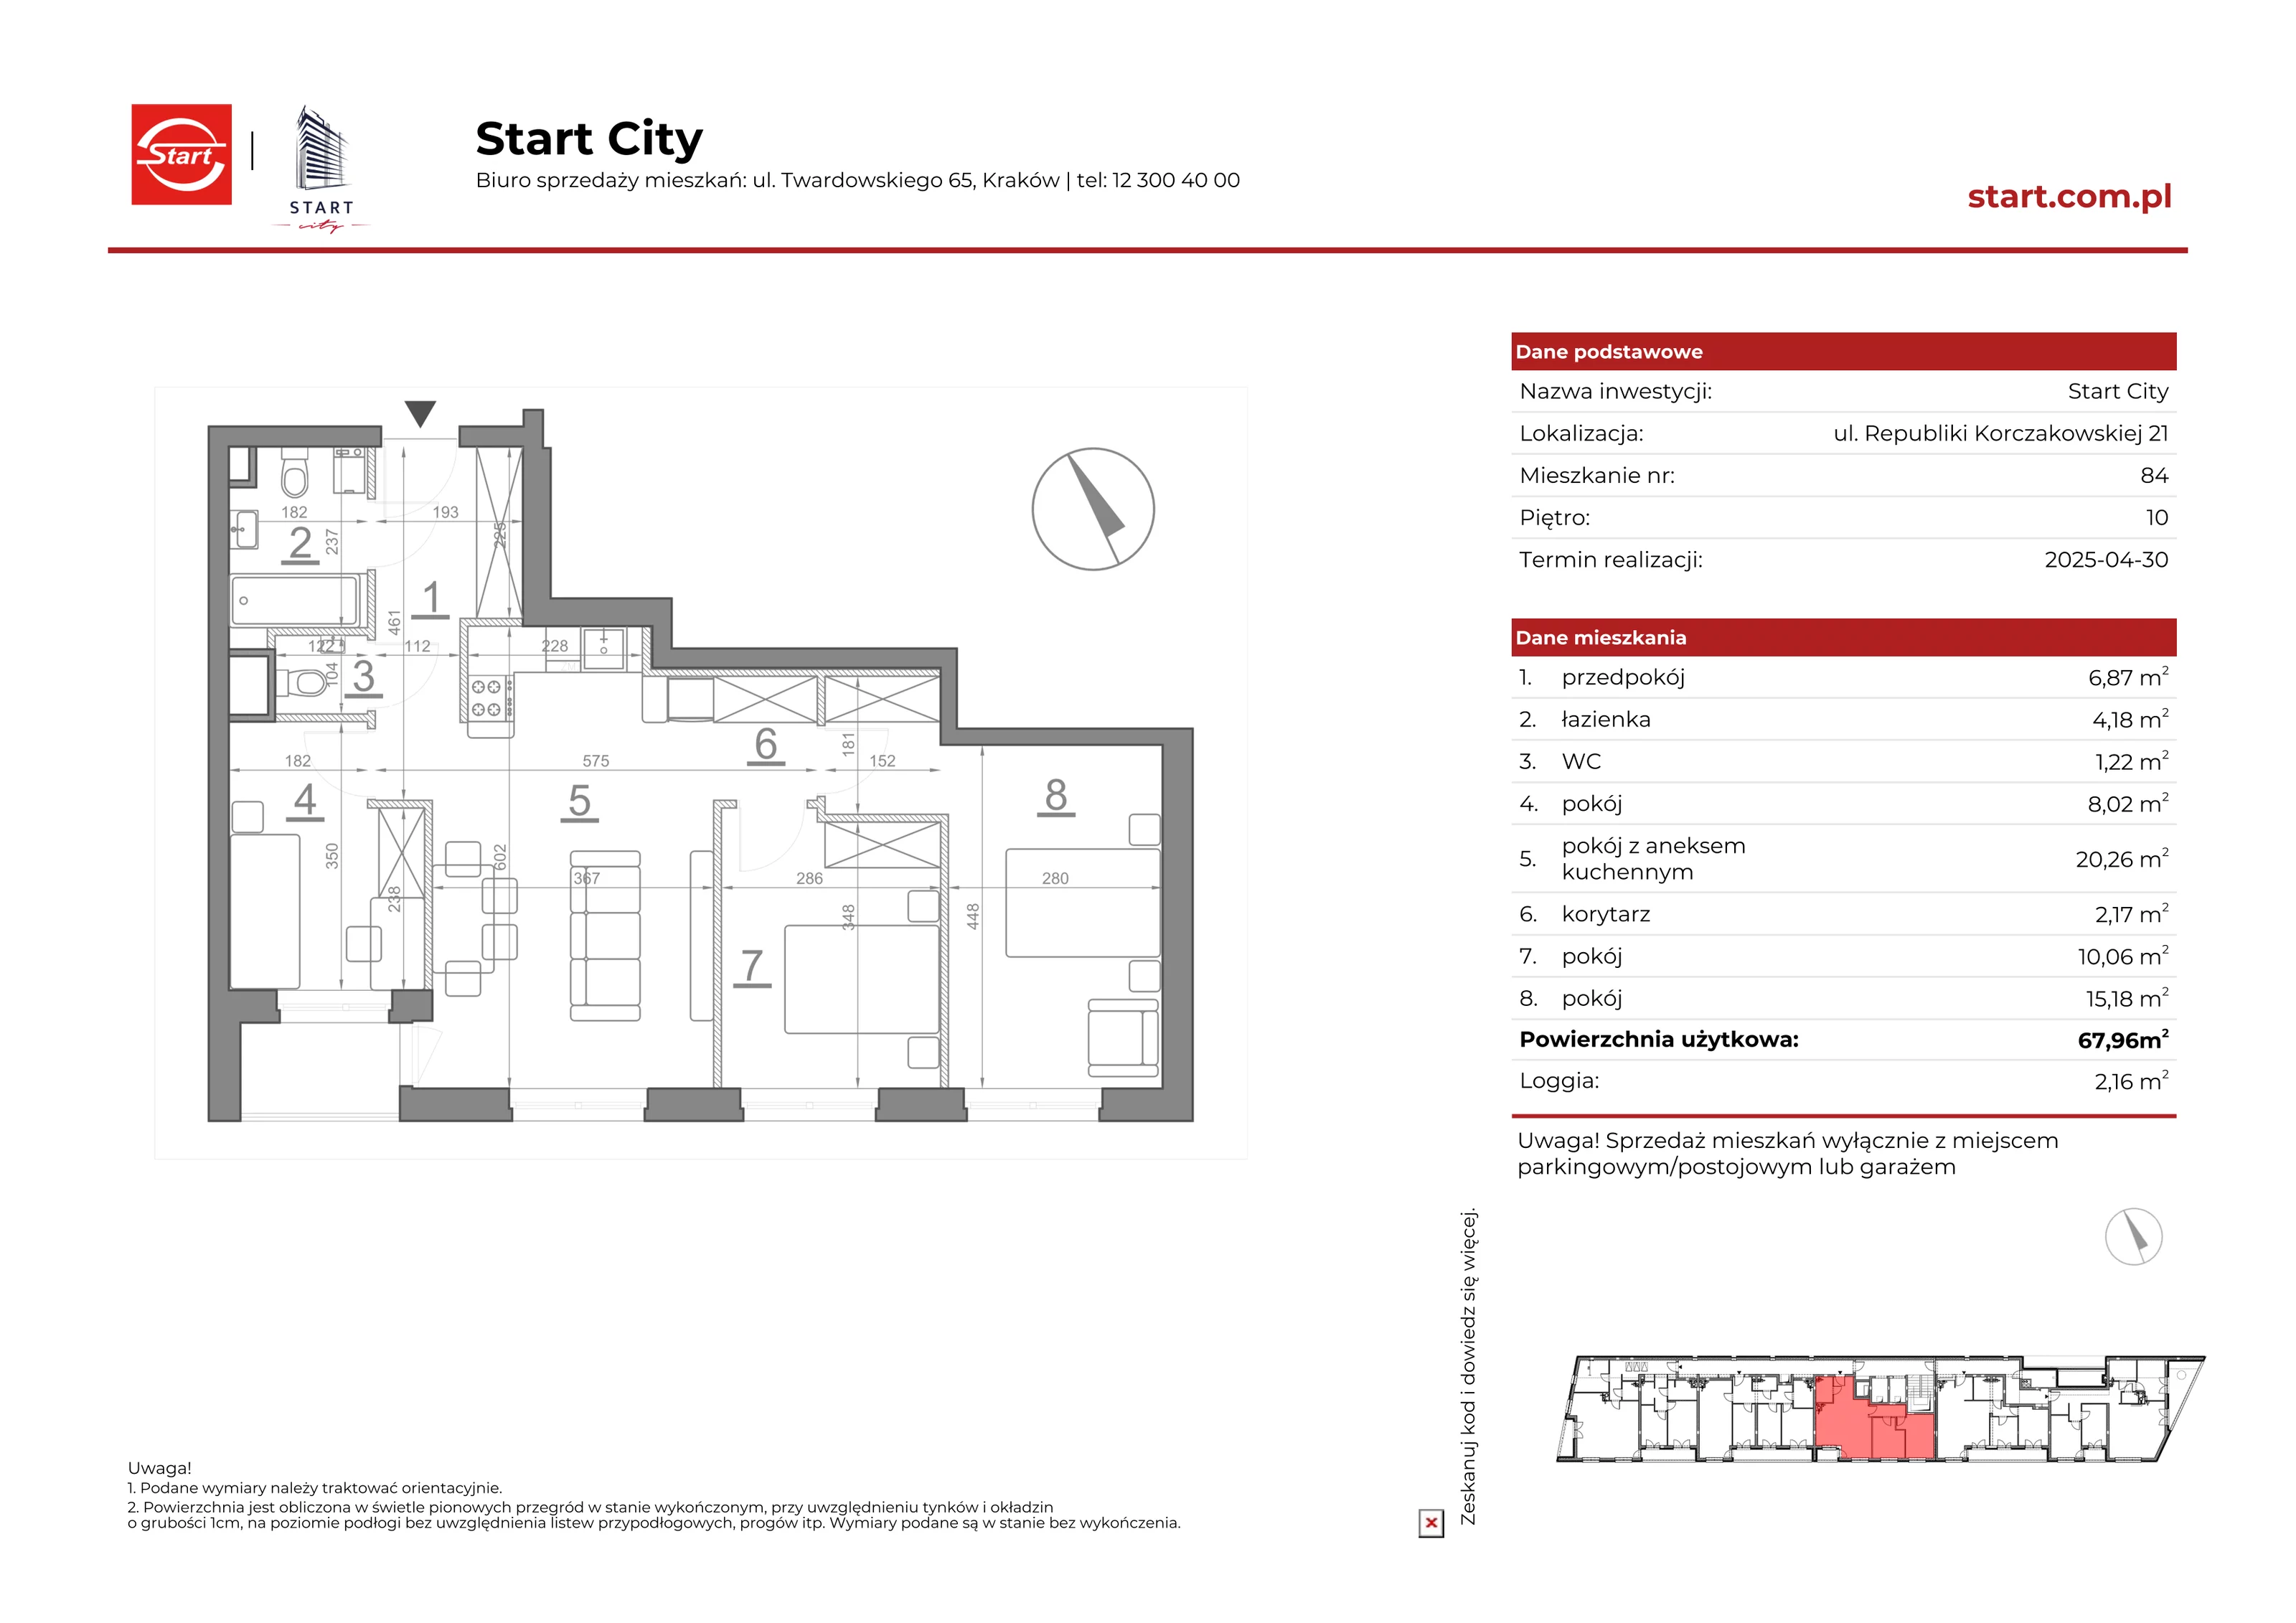 Mieszkanie 67,96 m², piętro 10, oferta nr 21/84, Start City, Kraków, Bieżanów-Prokocim, ul. Republiki Korczakowskiej 21